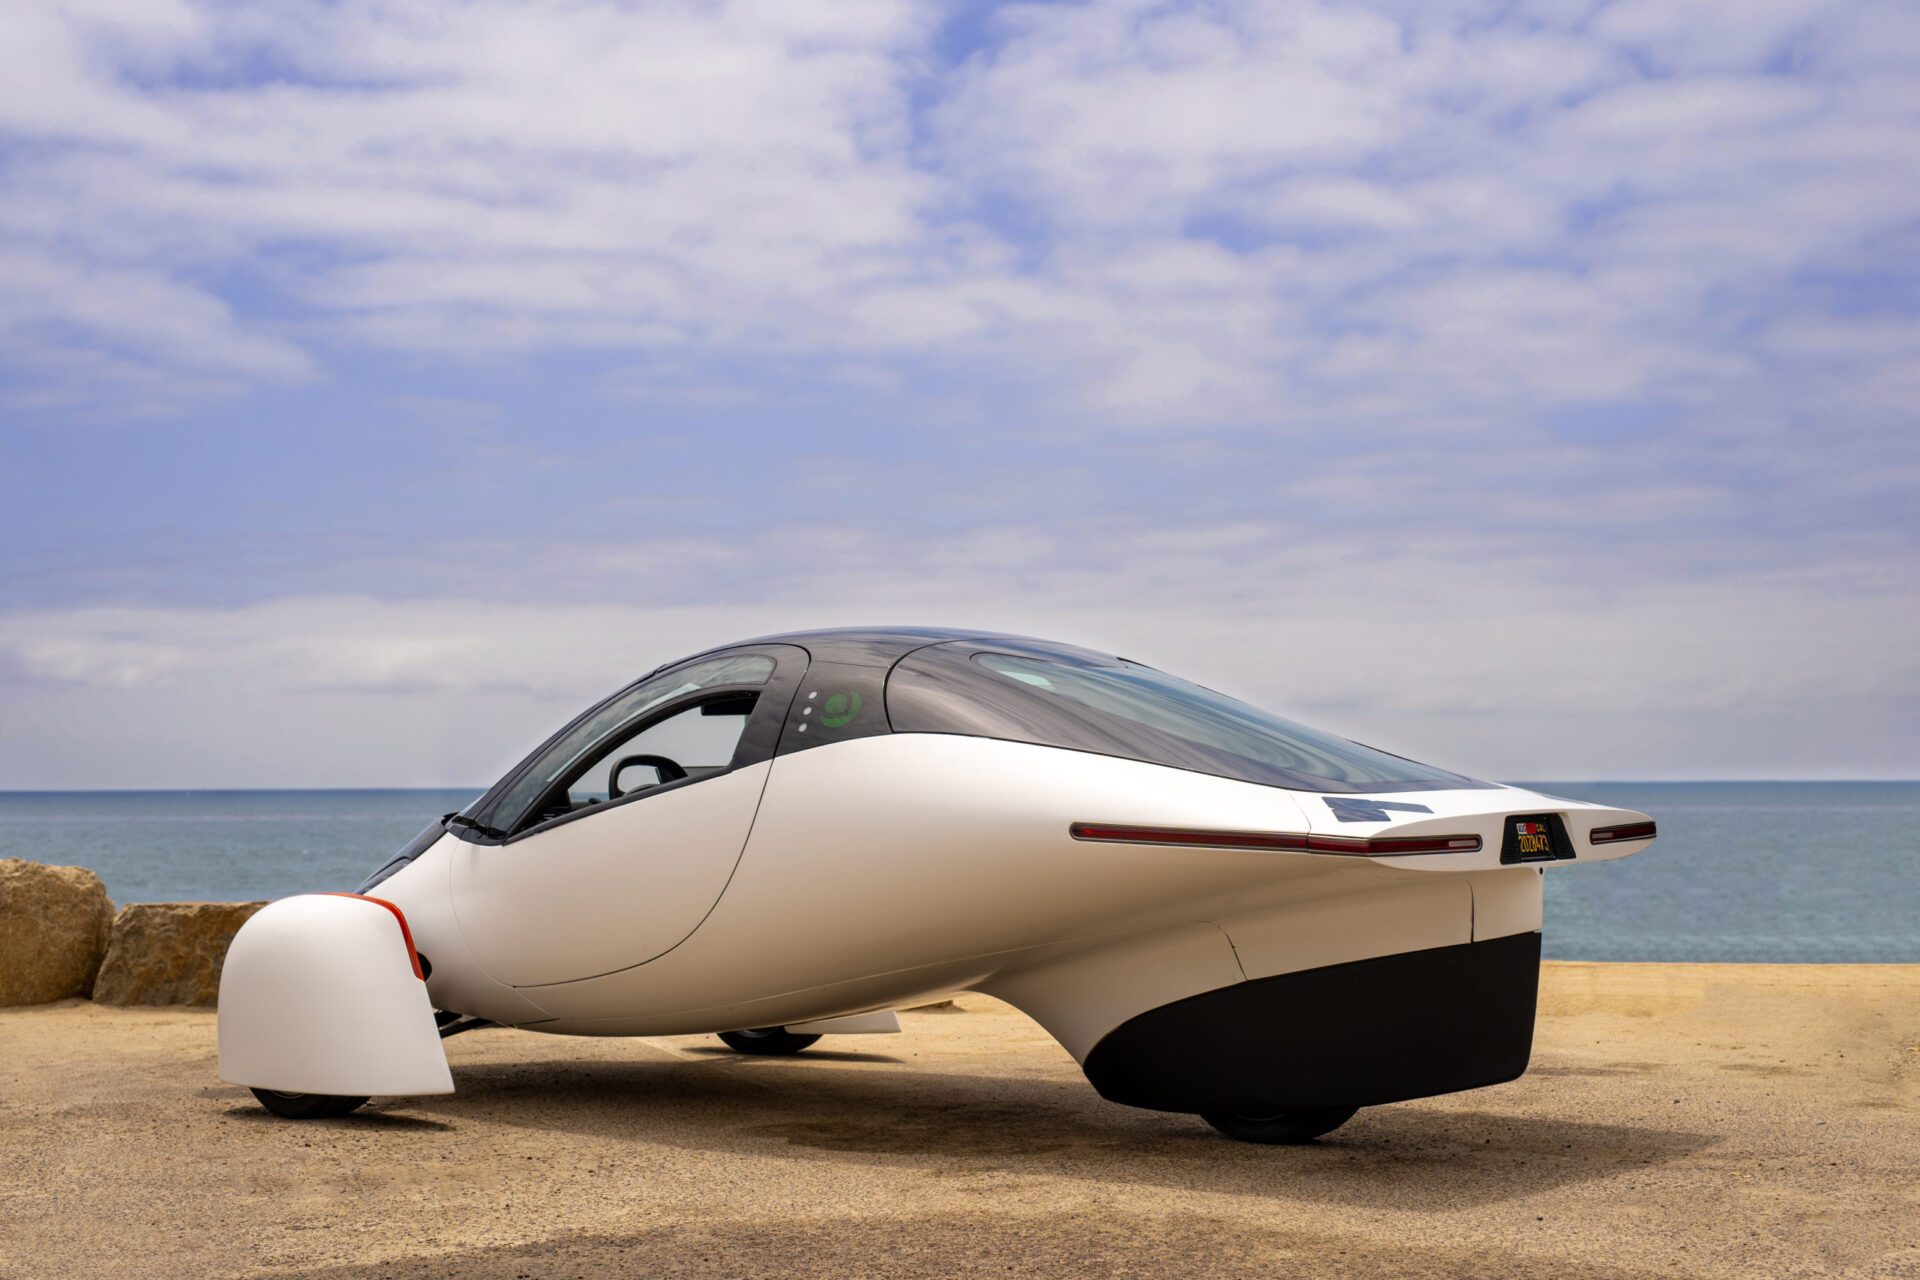 La voiture solaire, réalité ou utopie ? - Sciences et Avenir